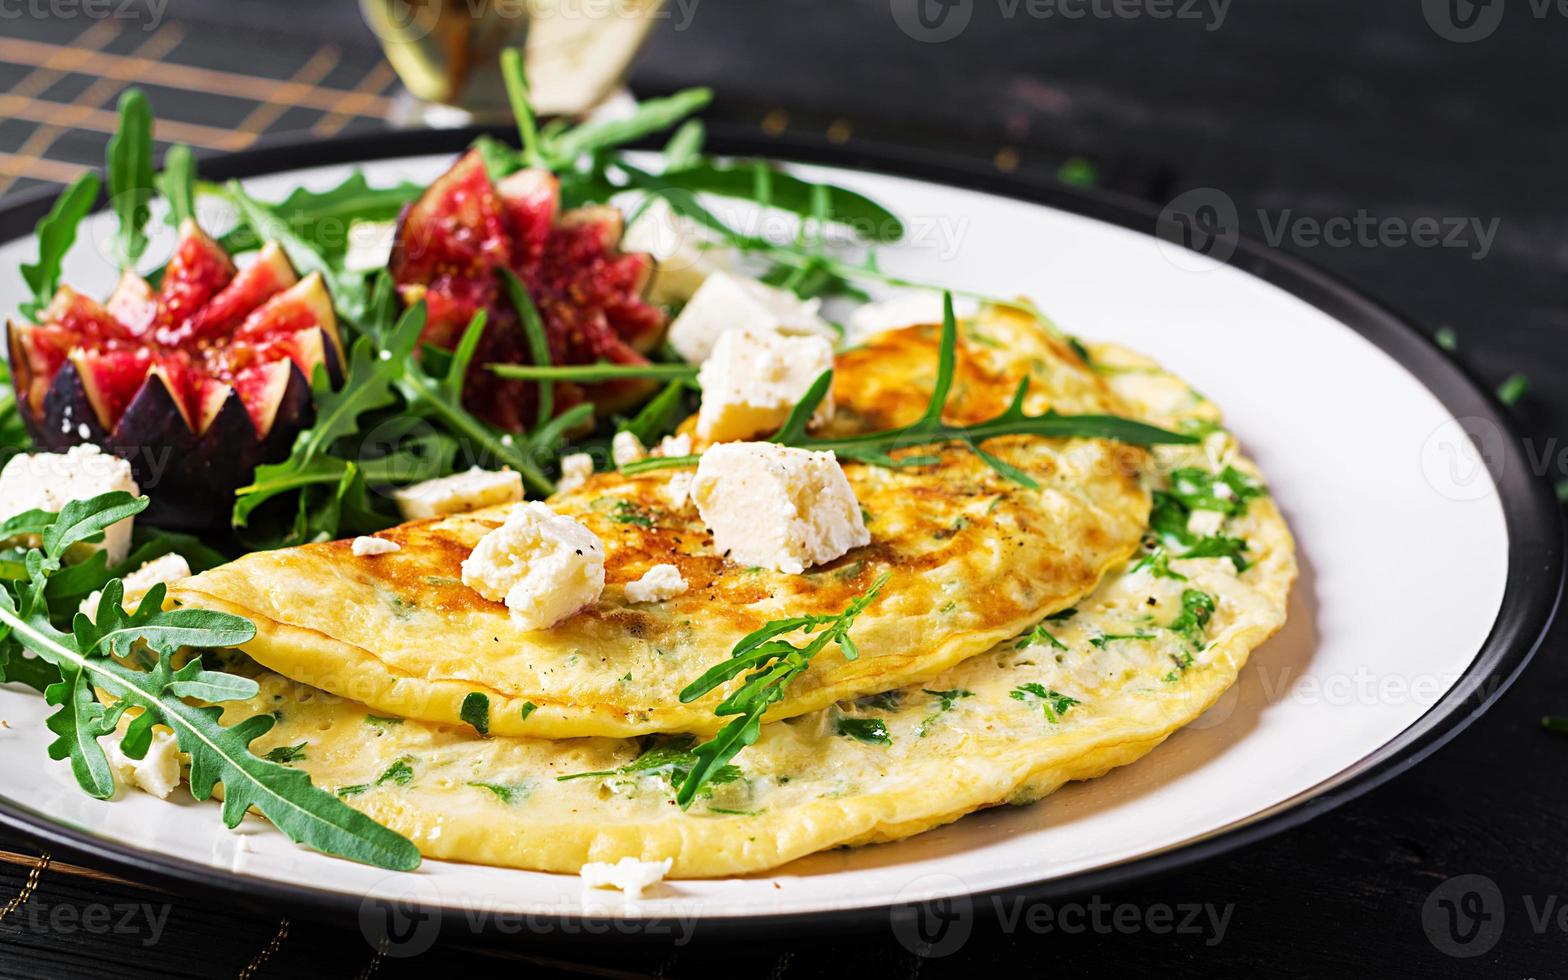 Omelette mit Feta Käse, Petersilie und Salat mit Feigen, Rucola auf Weiß Platte. Frittata - - Italienisch Omelett. foto